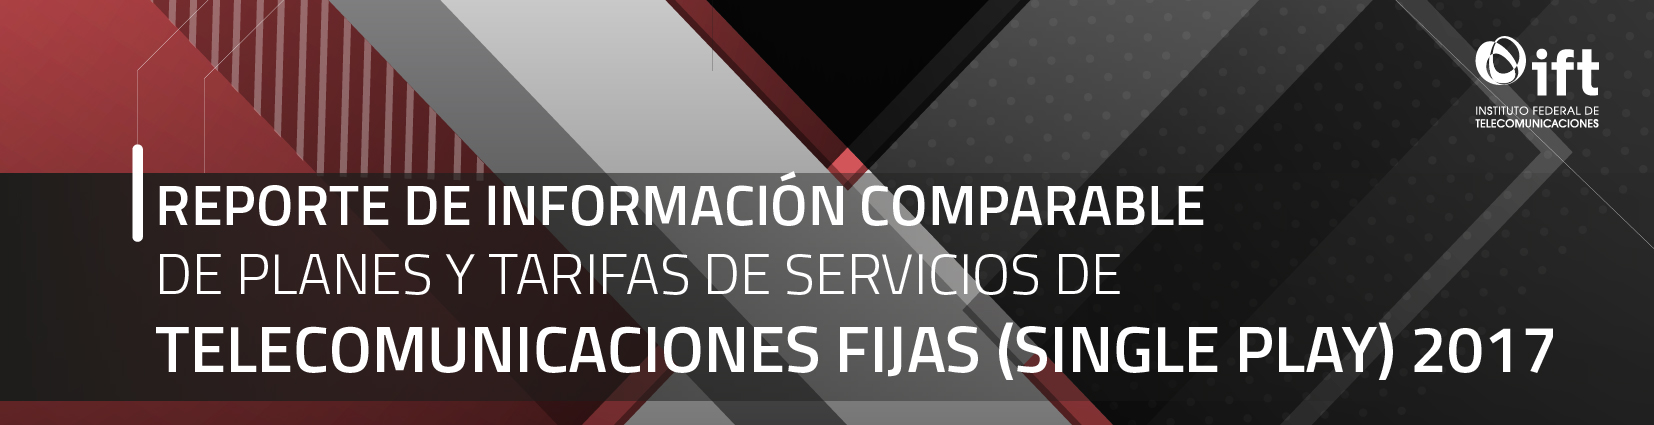 Reporte de Información Comparable de Planes y Tarifas de Servicios de Telecomunicaciones Fijas (Single Play) 2017